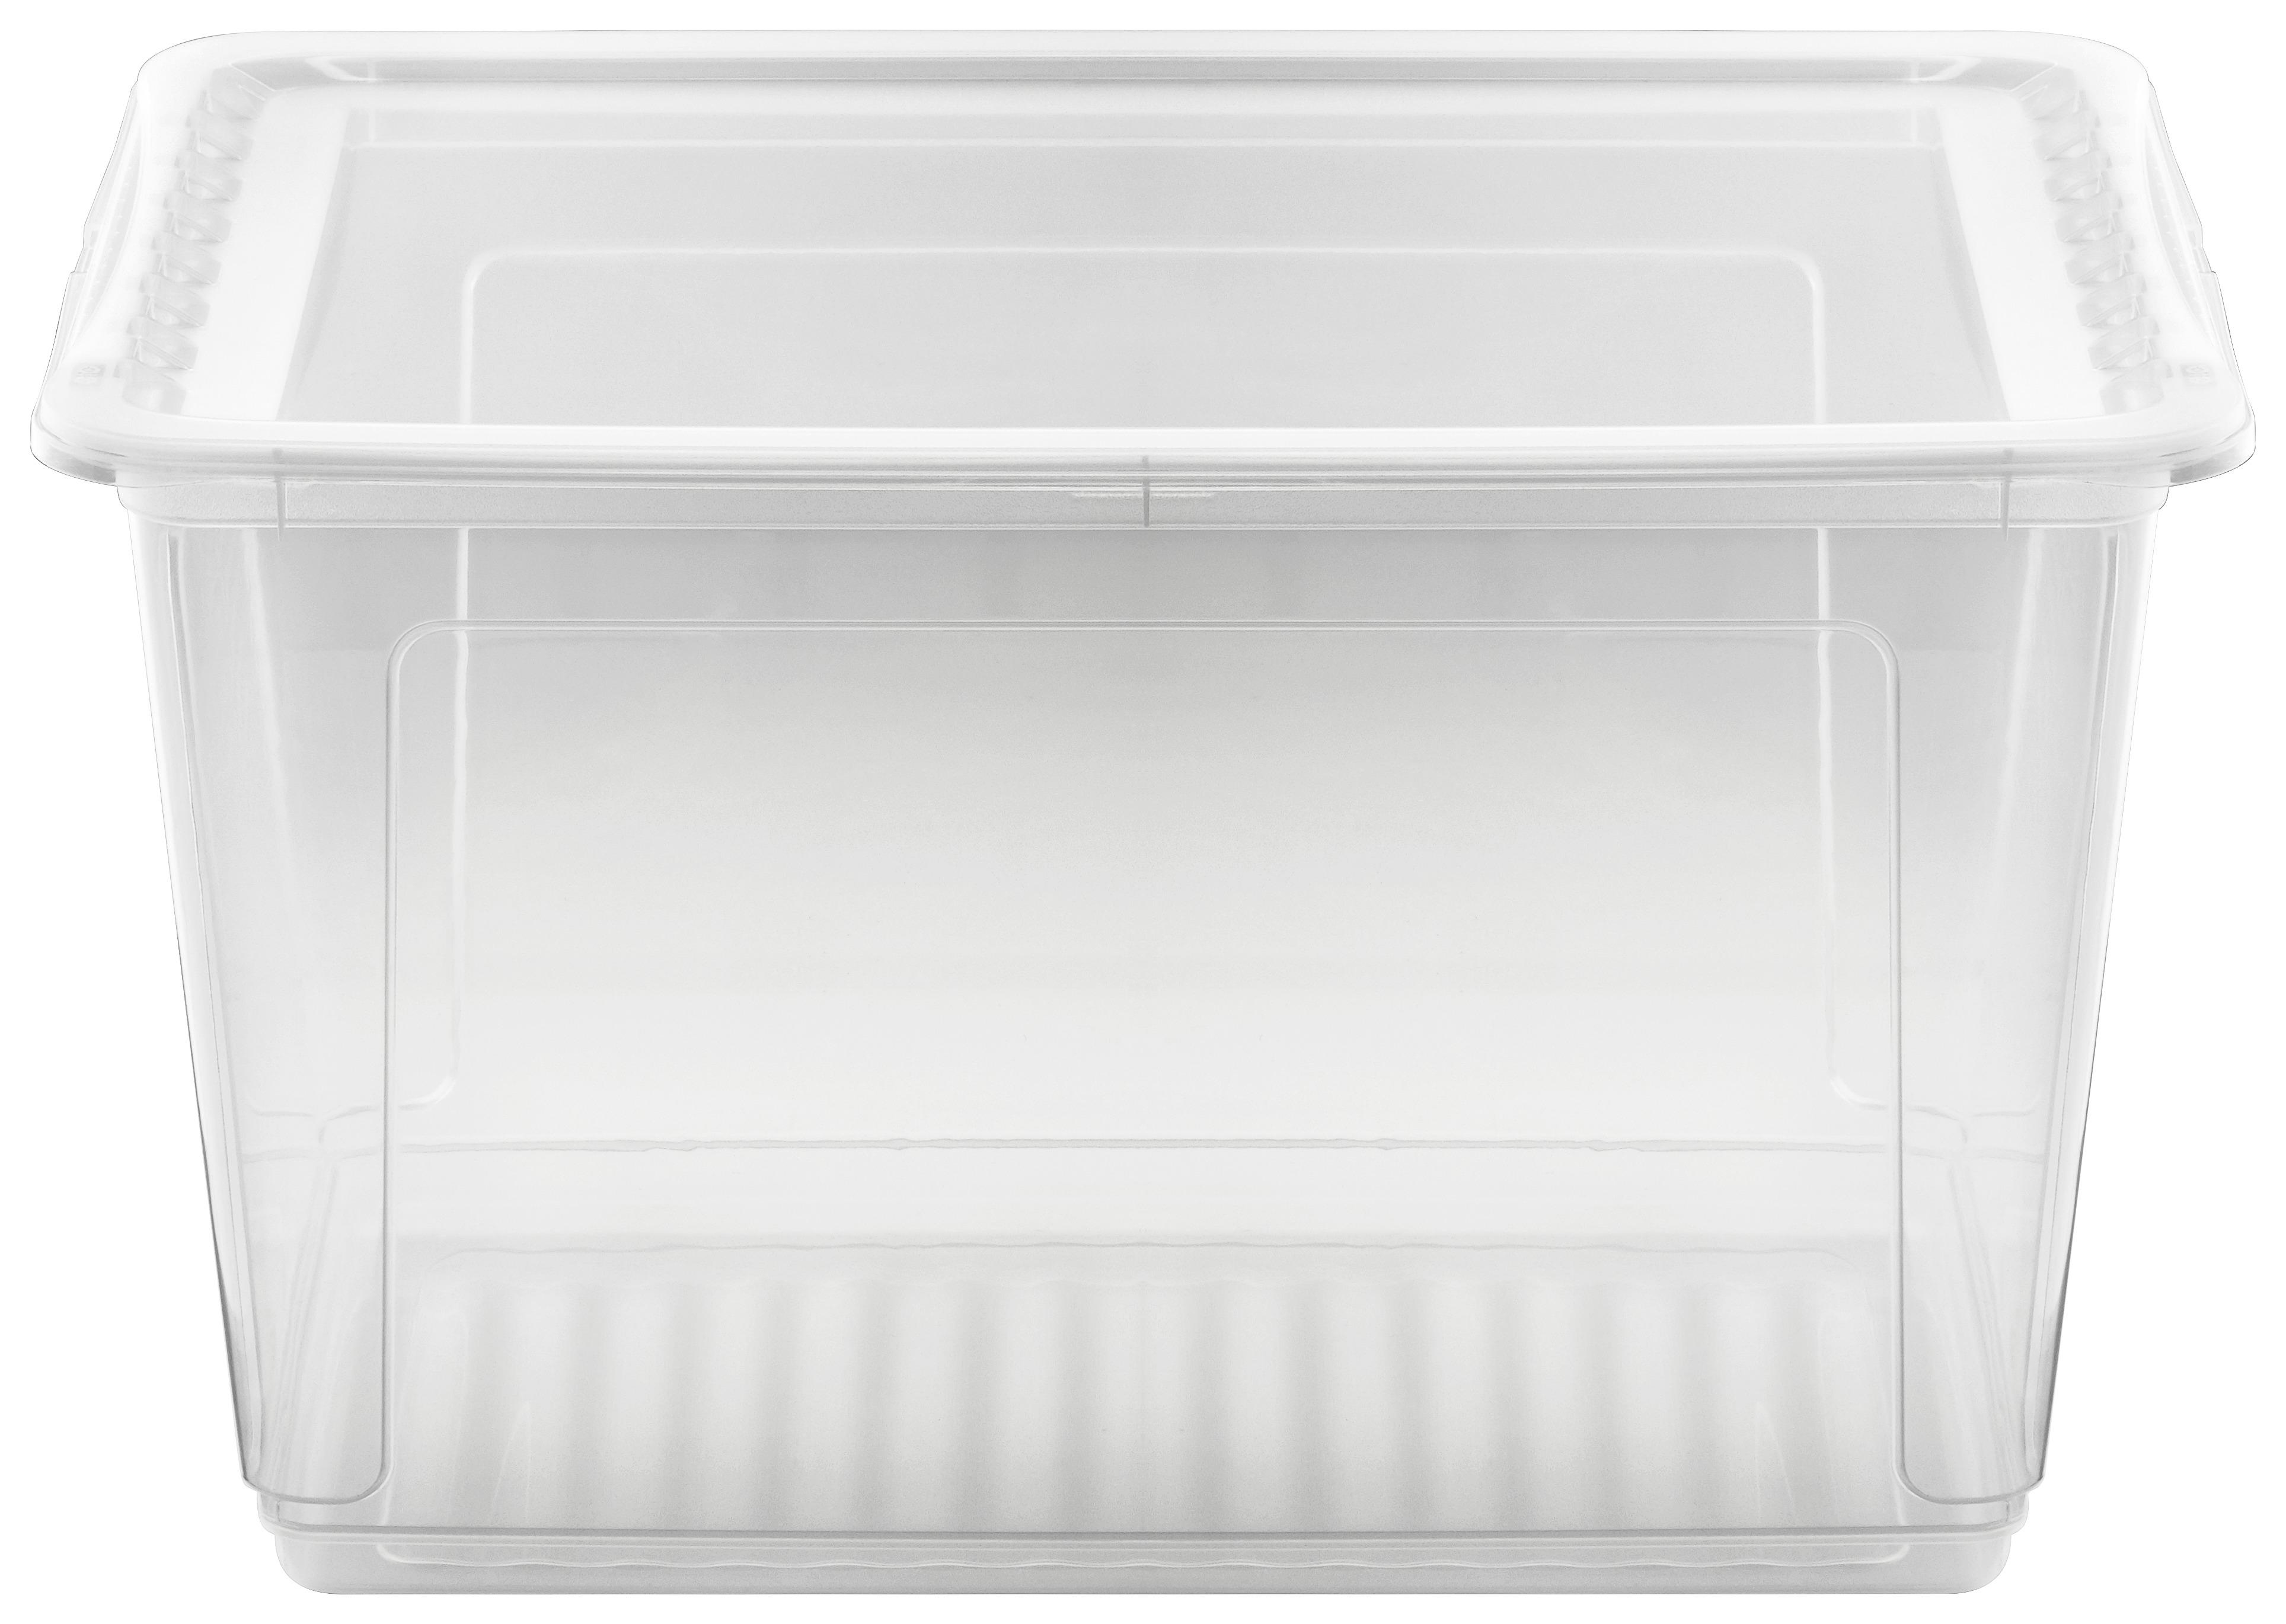 Aufbewahrungsbox Bea mit Deckel Kunststoff 59x39x35 cm - Transparent, KONVENTIONELL, Kunststoff (59/39/35cm) - Homezone